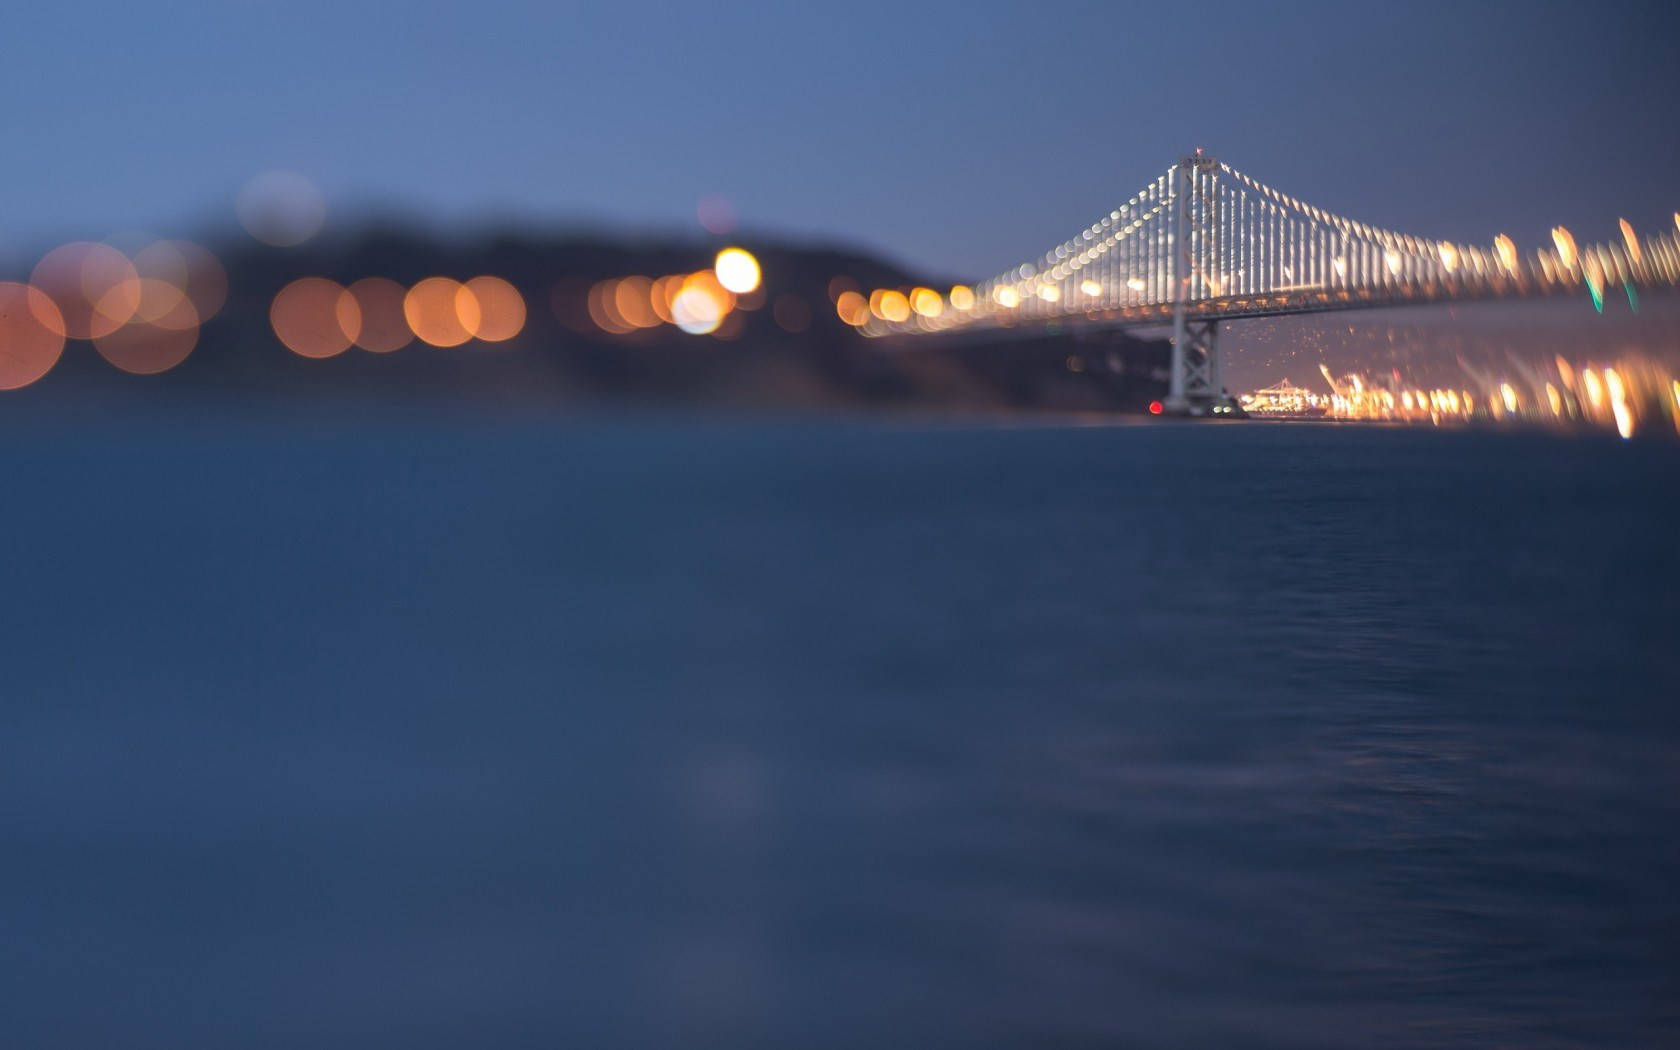 Tag et kig på det spektakulære udsigt til San Francisco-bugten. Wallpaper